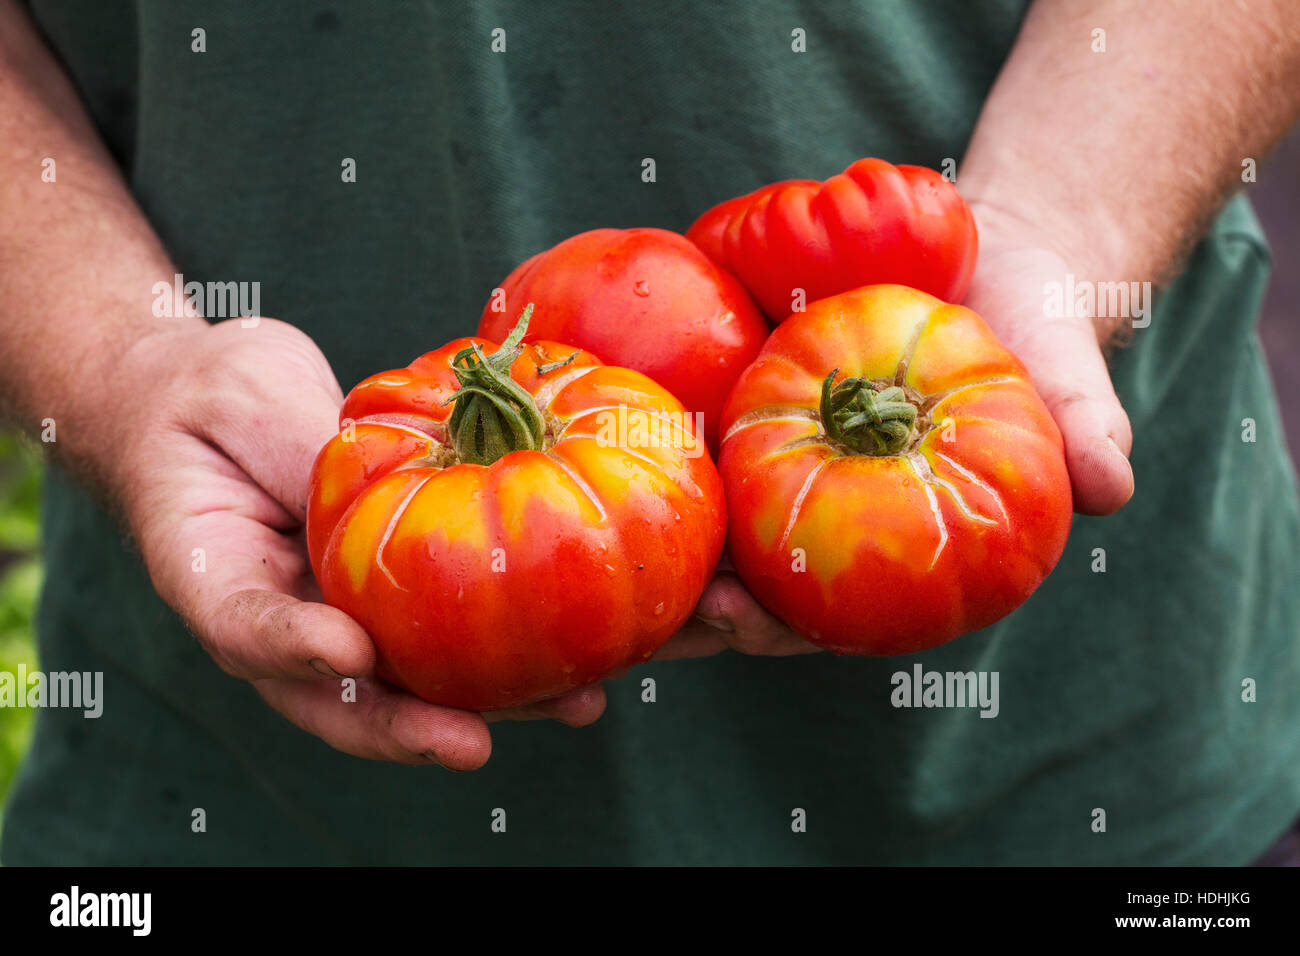 Una persona in possesso di una manciata di appena raccolto grandi striped bistecca di manzo pomodori. Foto Stock